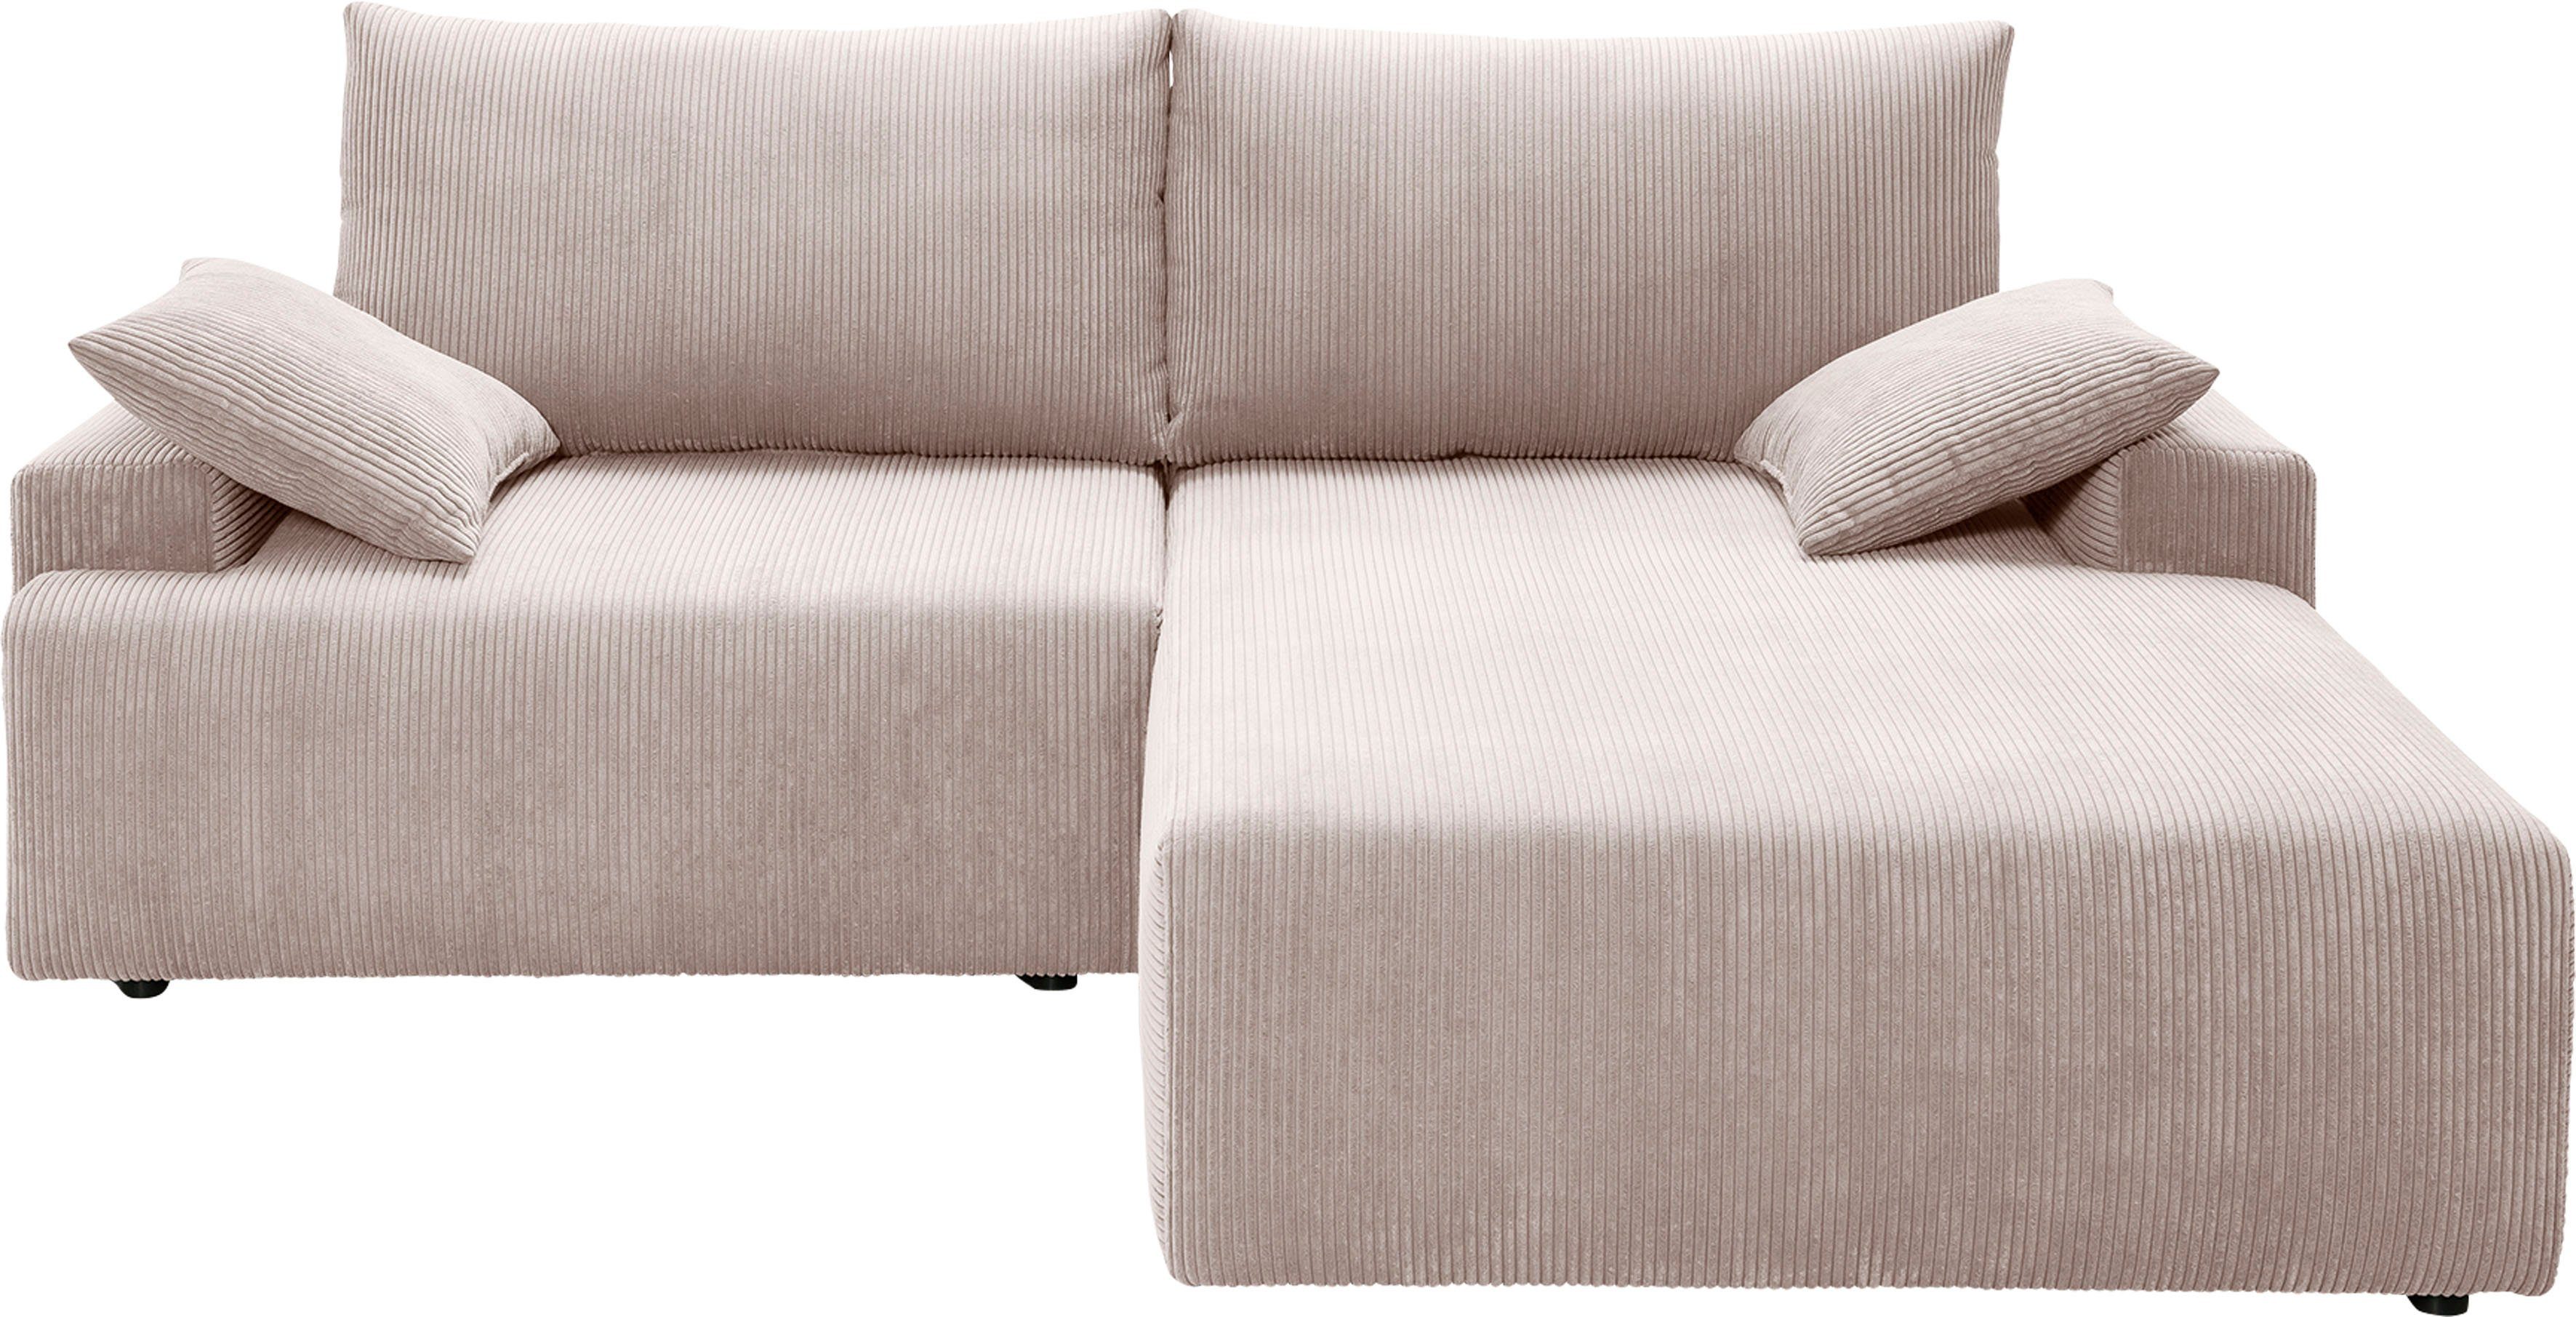 exxpo - sofa fashion Bettkasten Orinoko, biege Cord-Farben inklusive Bettfunktion Ecksofa verschiedenen in und